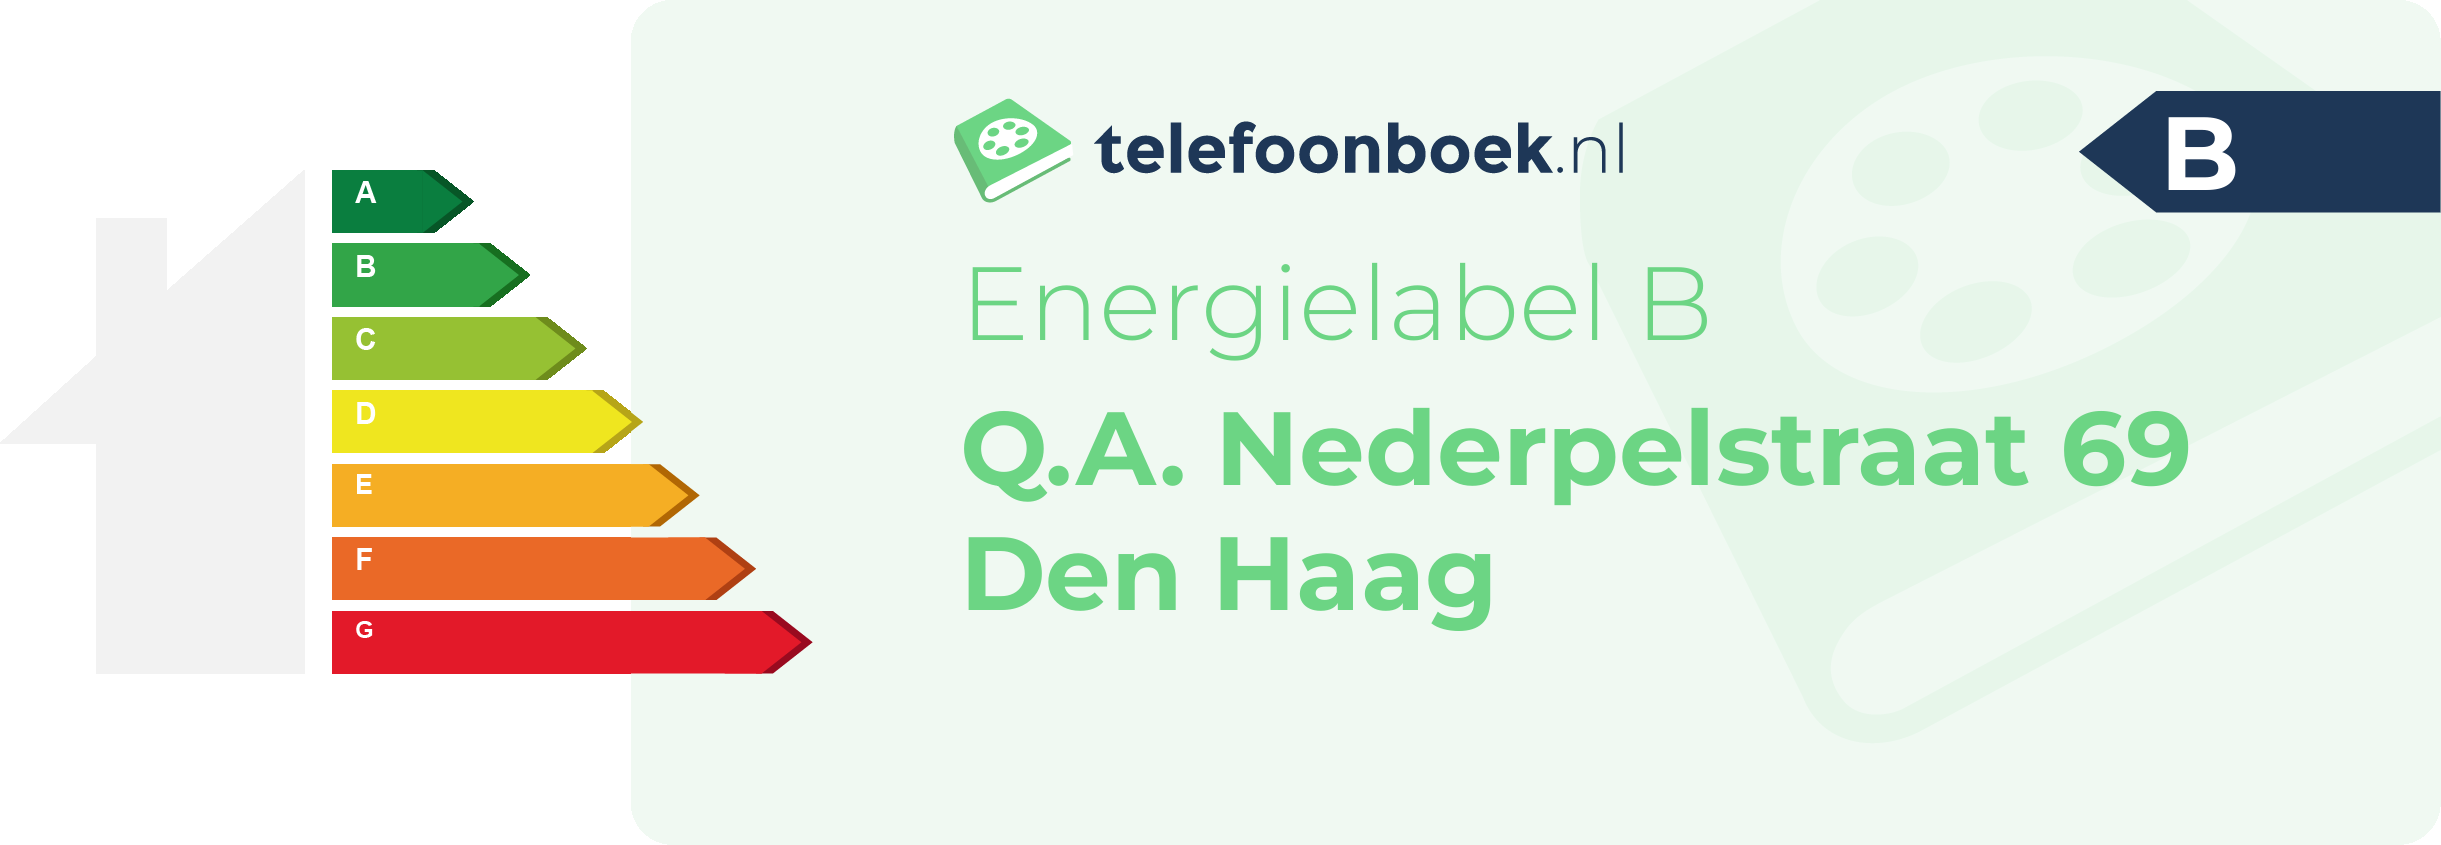 Energielabel Q.A. Nederpelstraat 69 Den Haag